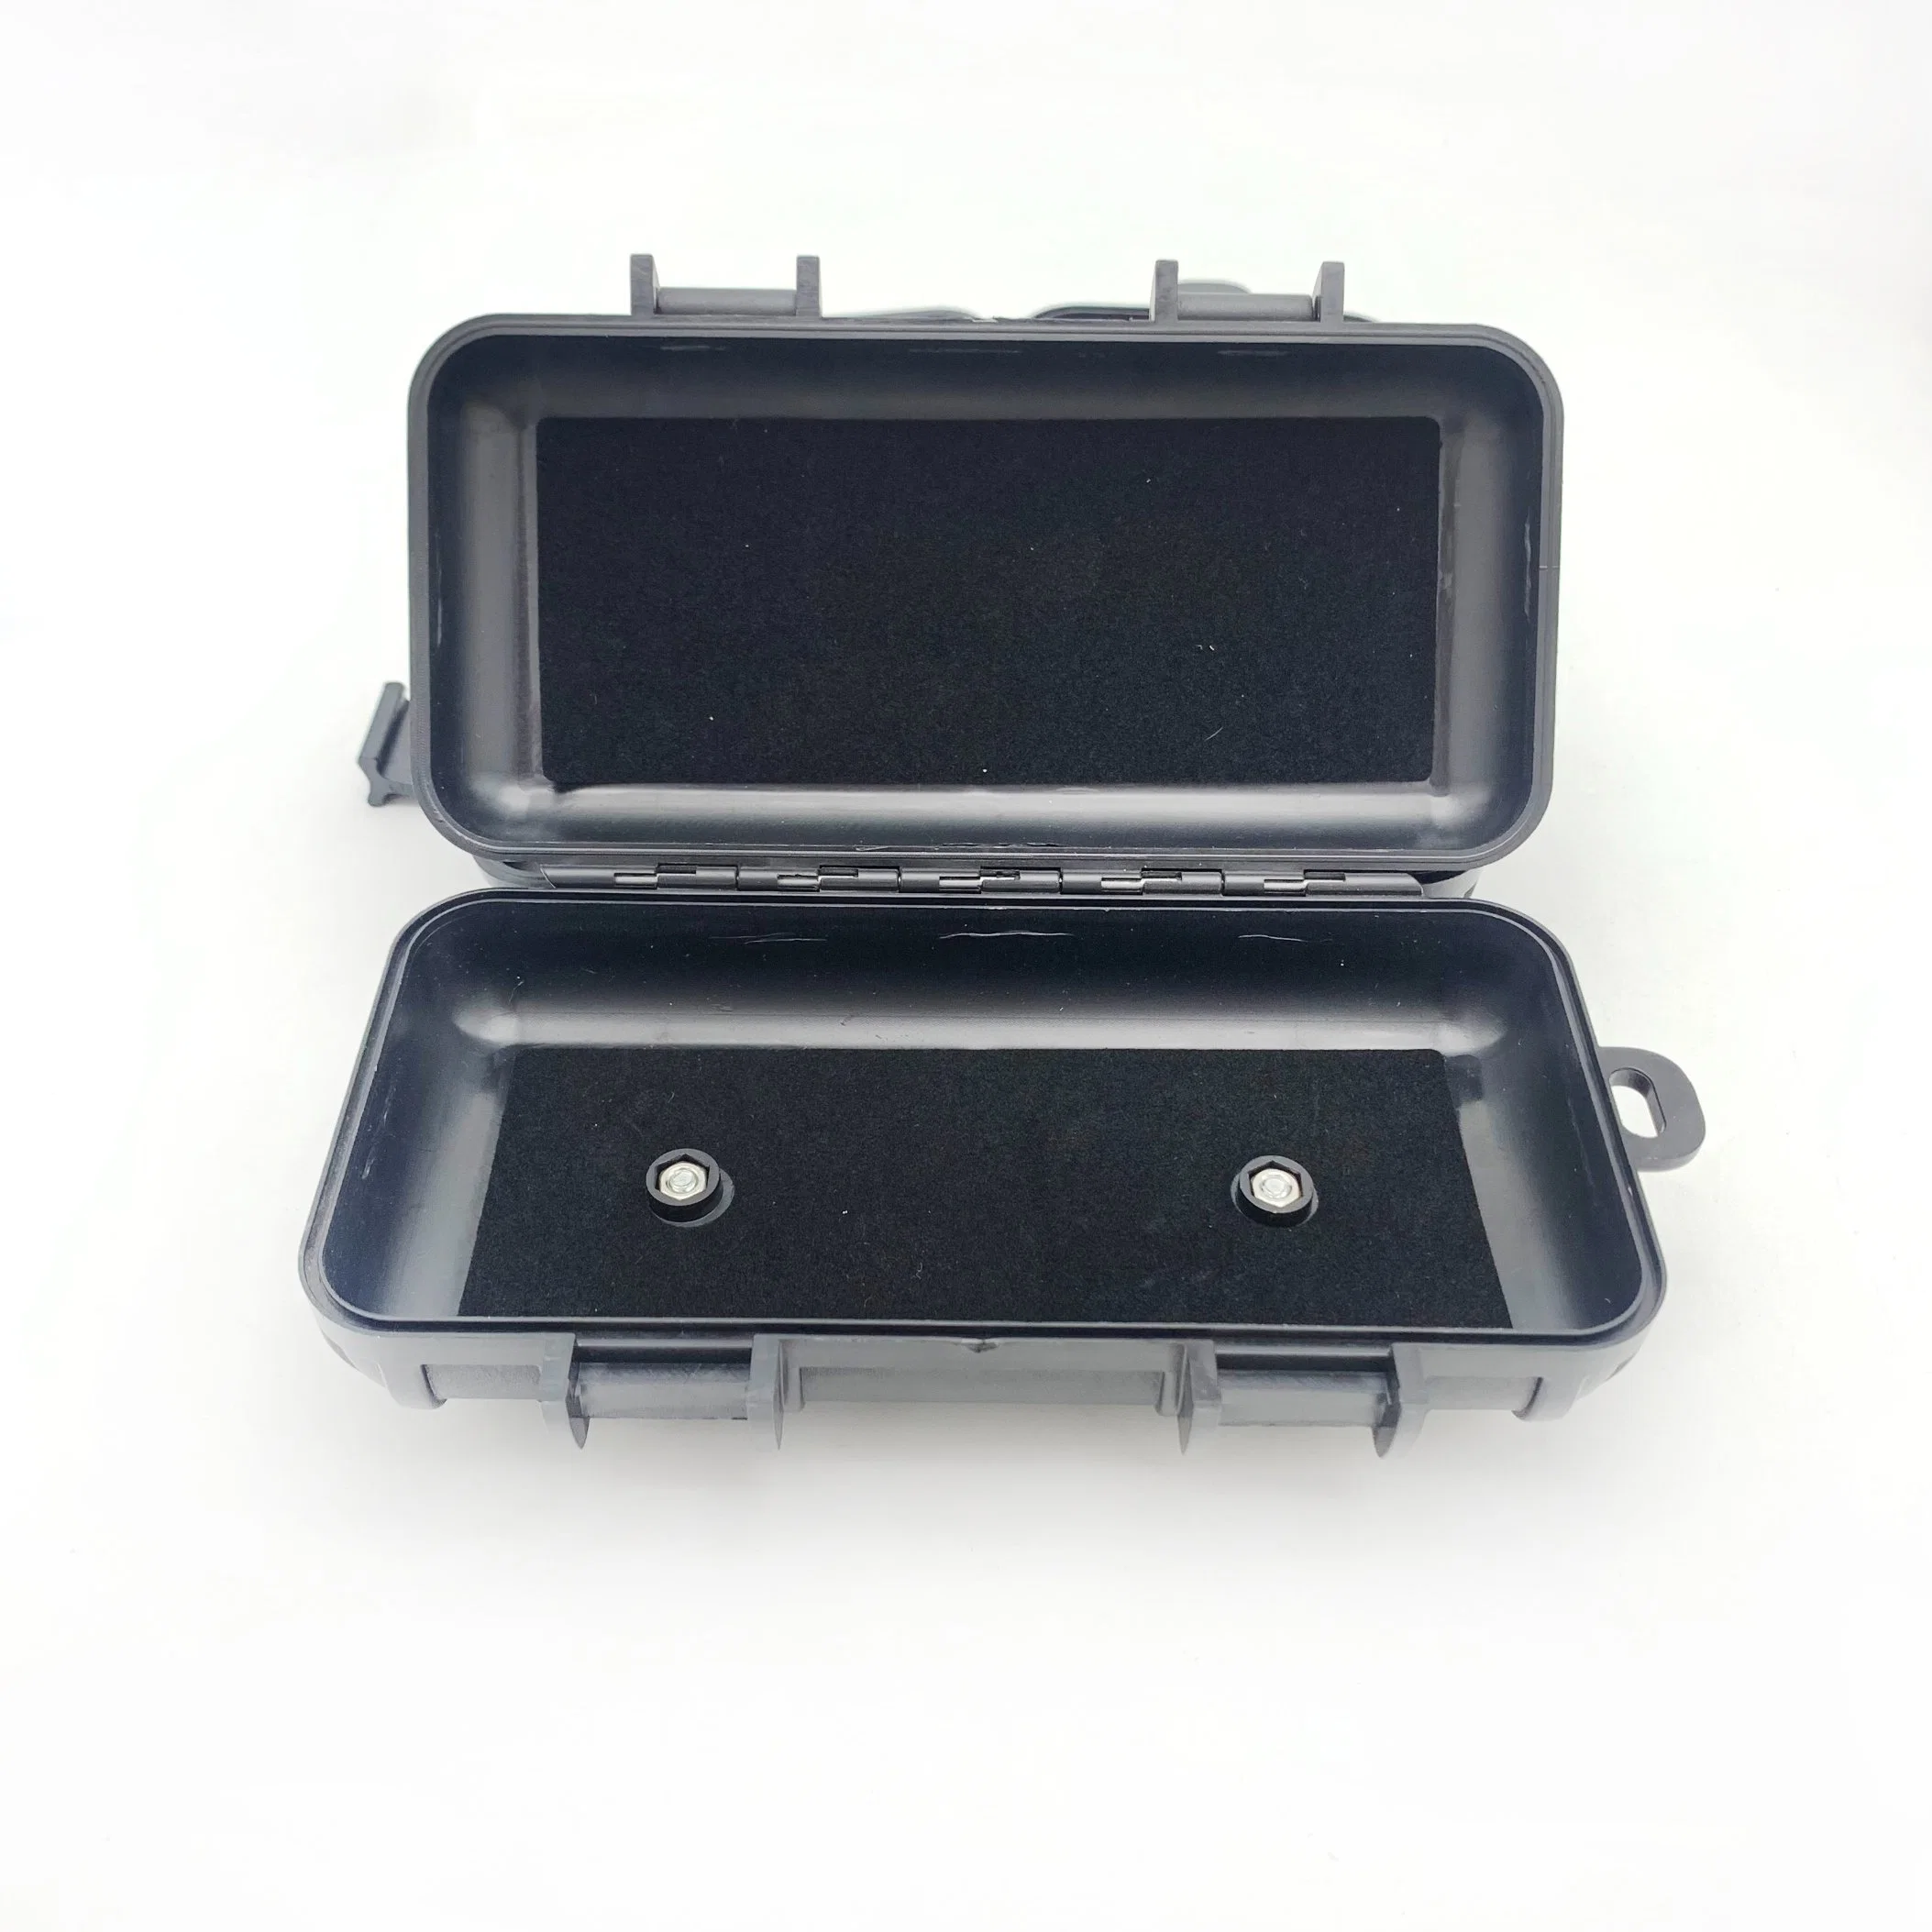 La mejor calidad de Material ABS duro de almacenamiento oculto de Color Negro Caja Littler adecuadas en la tabla Auto Stick pistola oculta la parte inferior de verificación